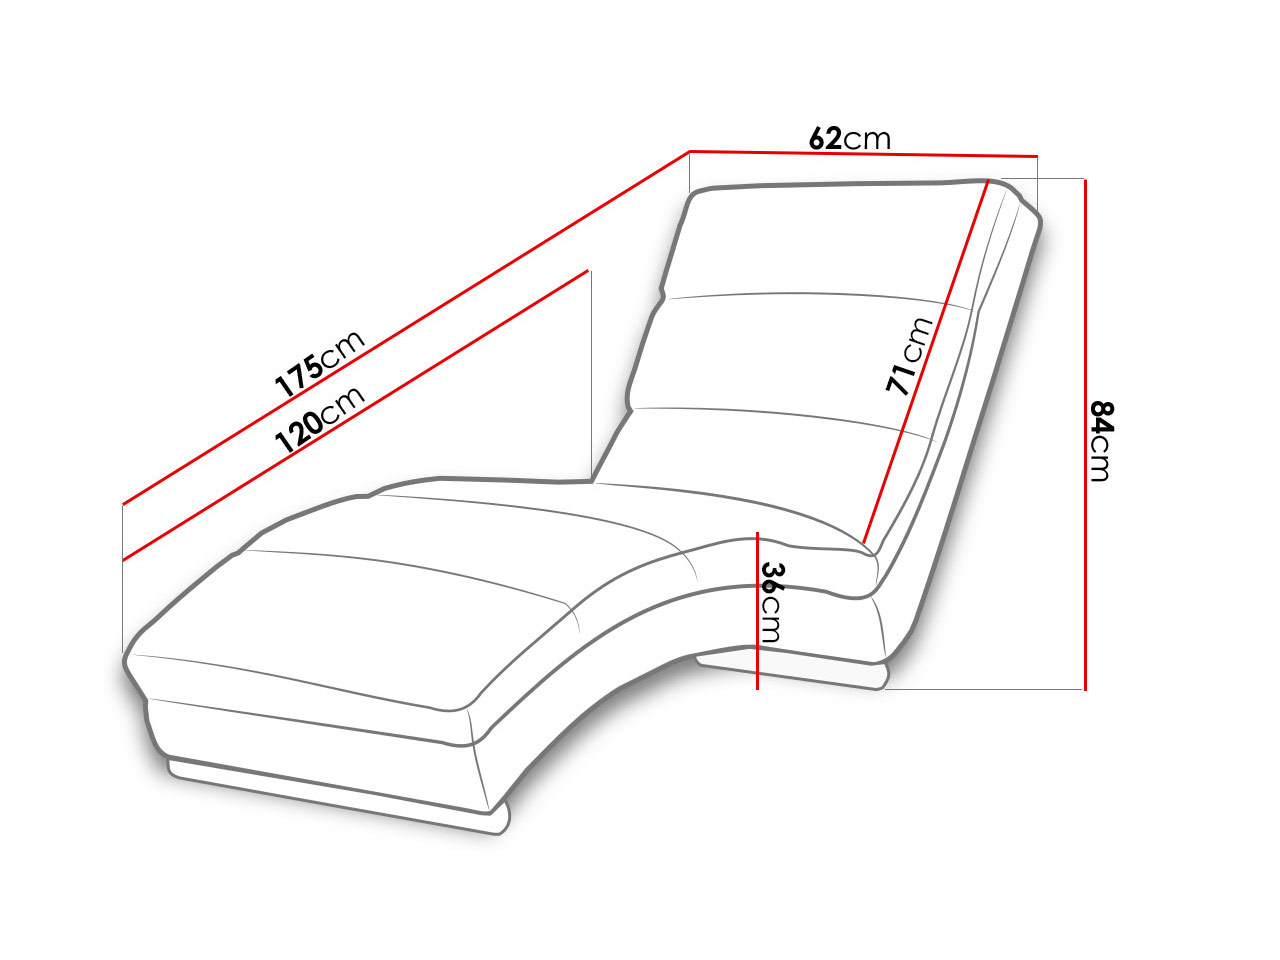 угол наклона спинки кресла для отдыха относительно сиденья